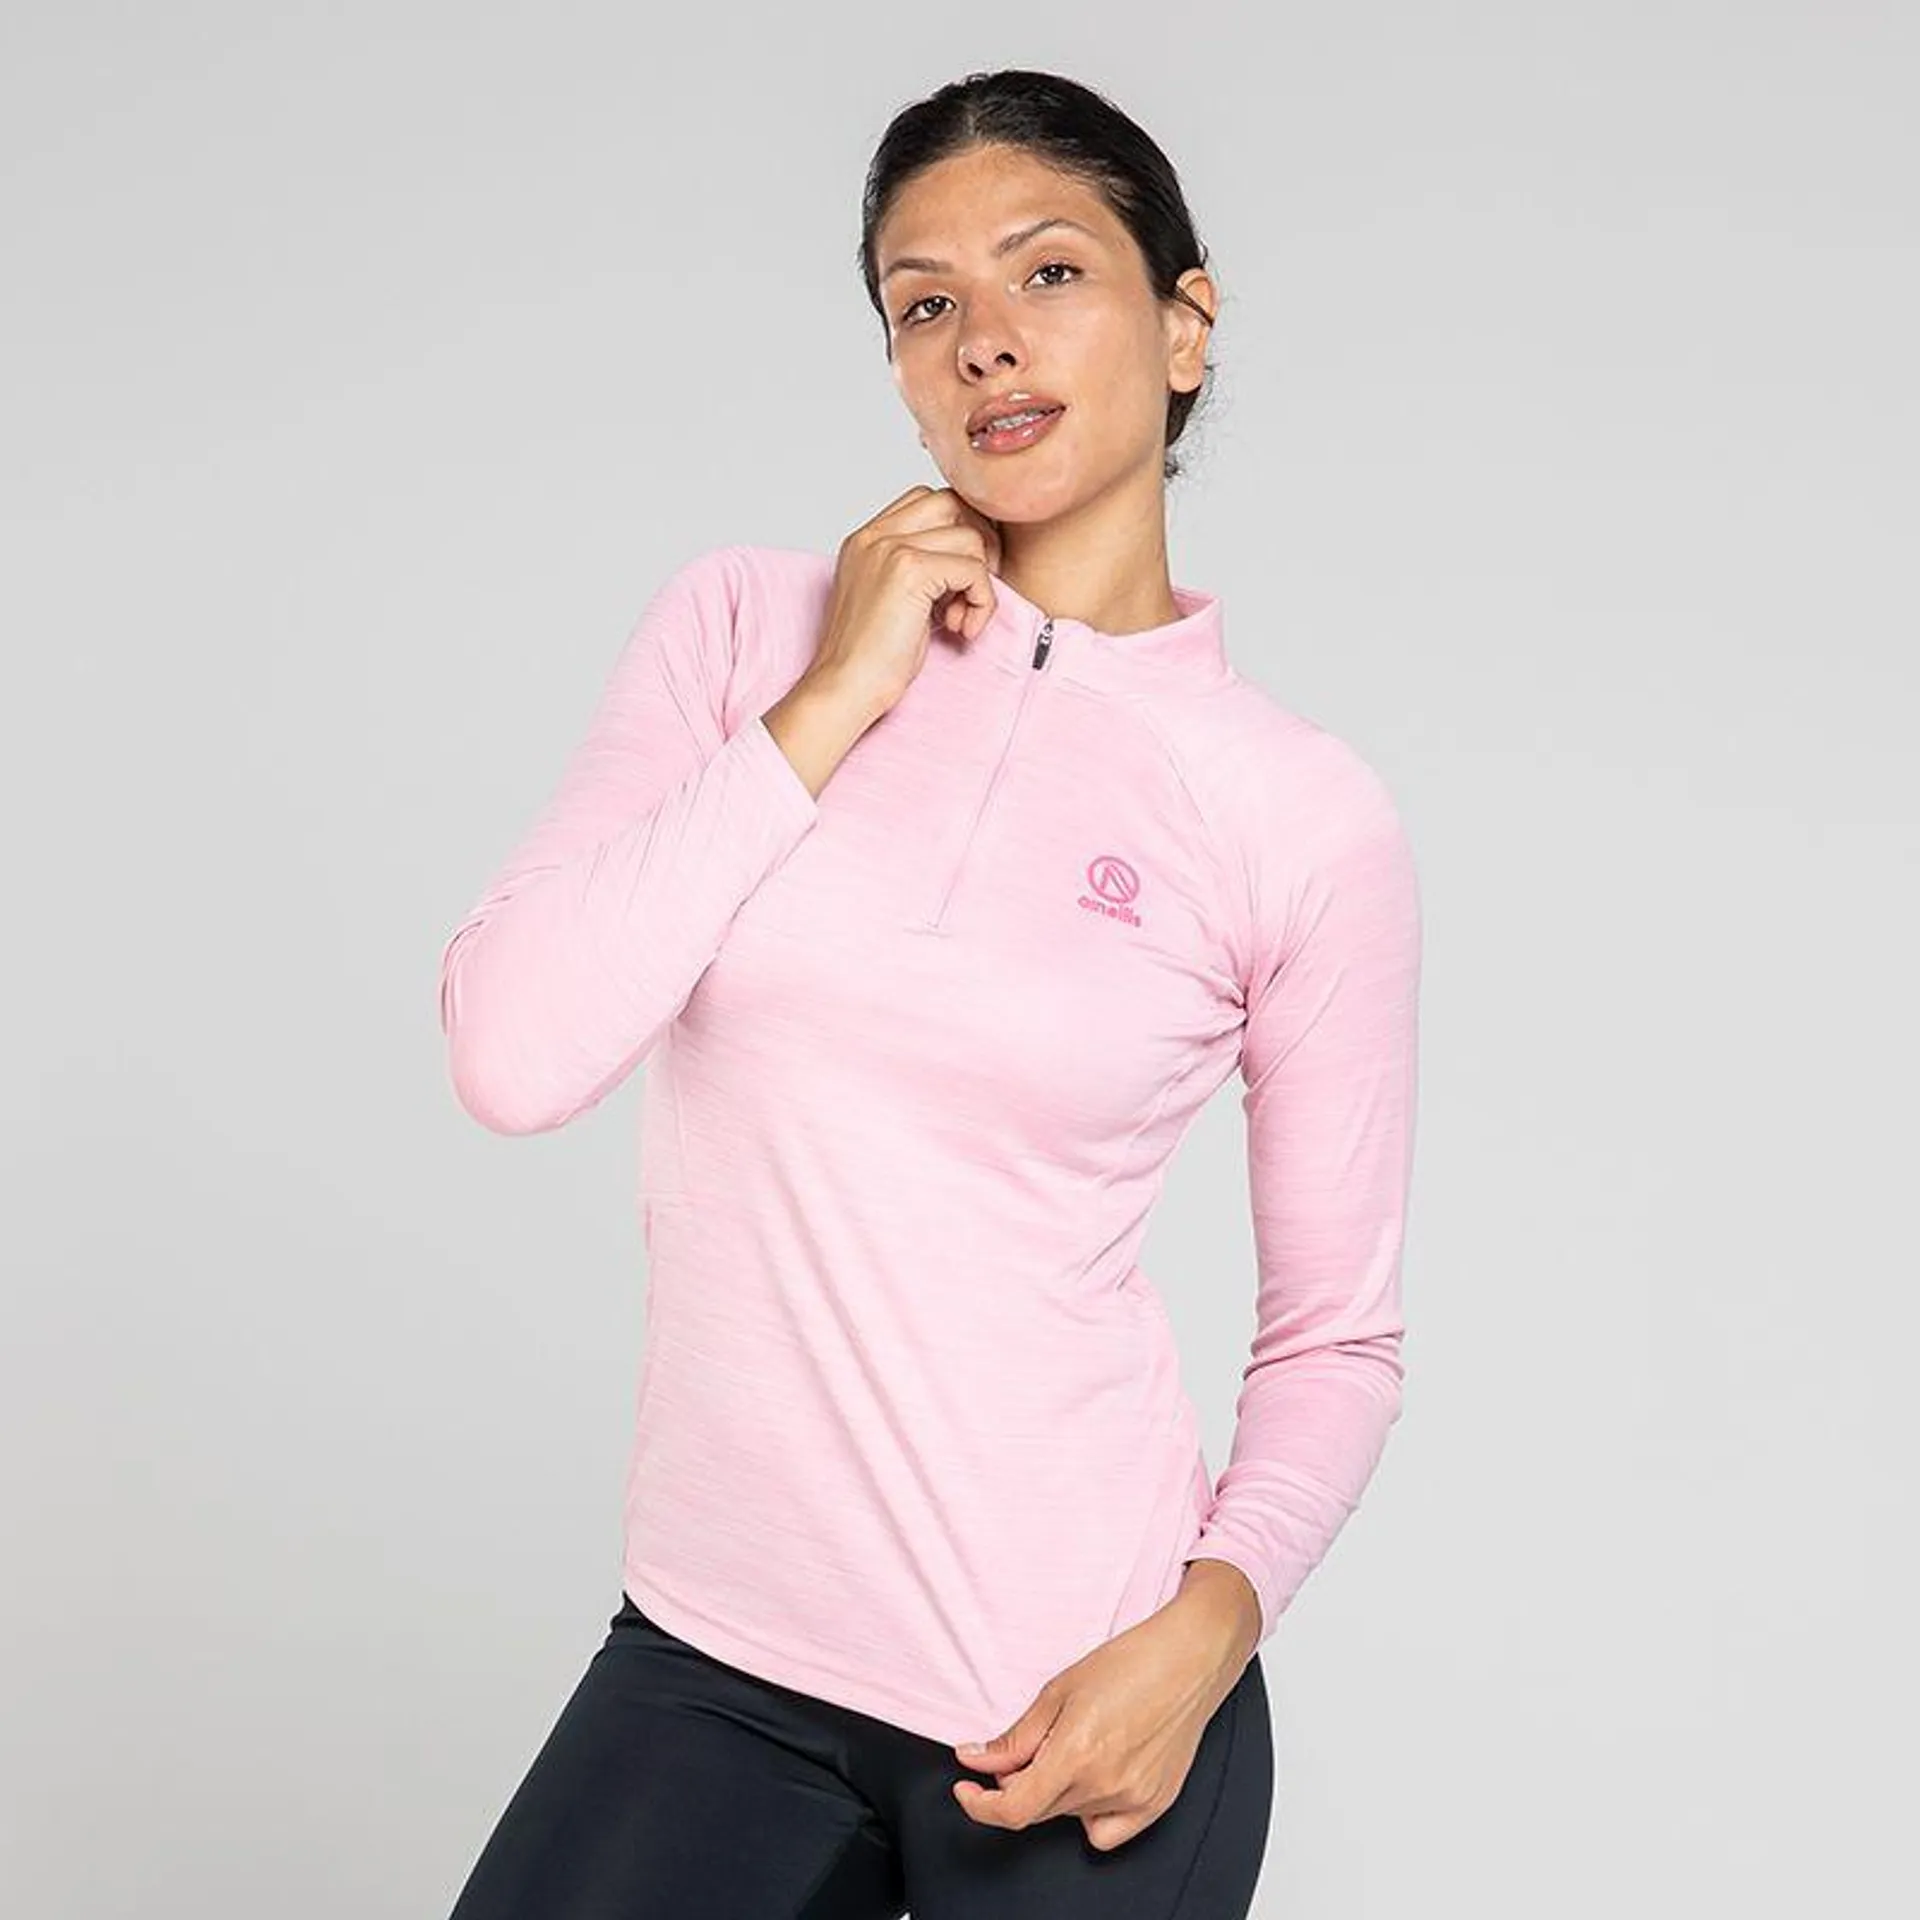 Women's Madison Half Zip Midlayer Top Pink